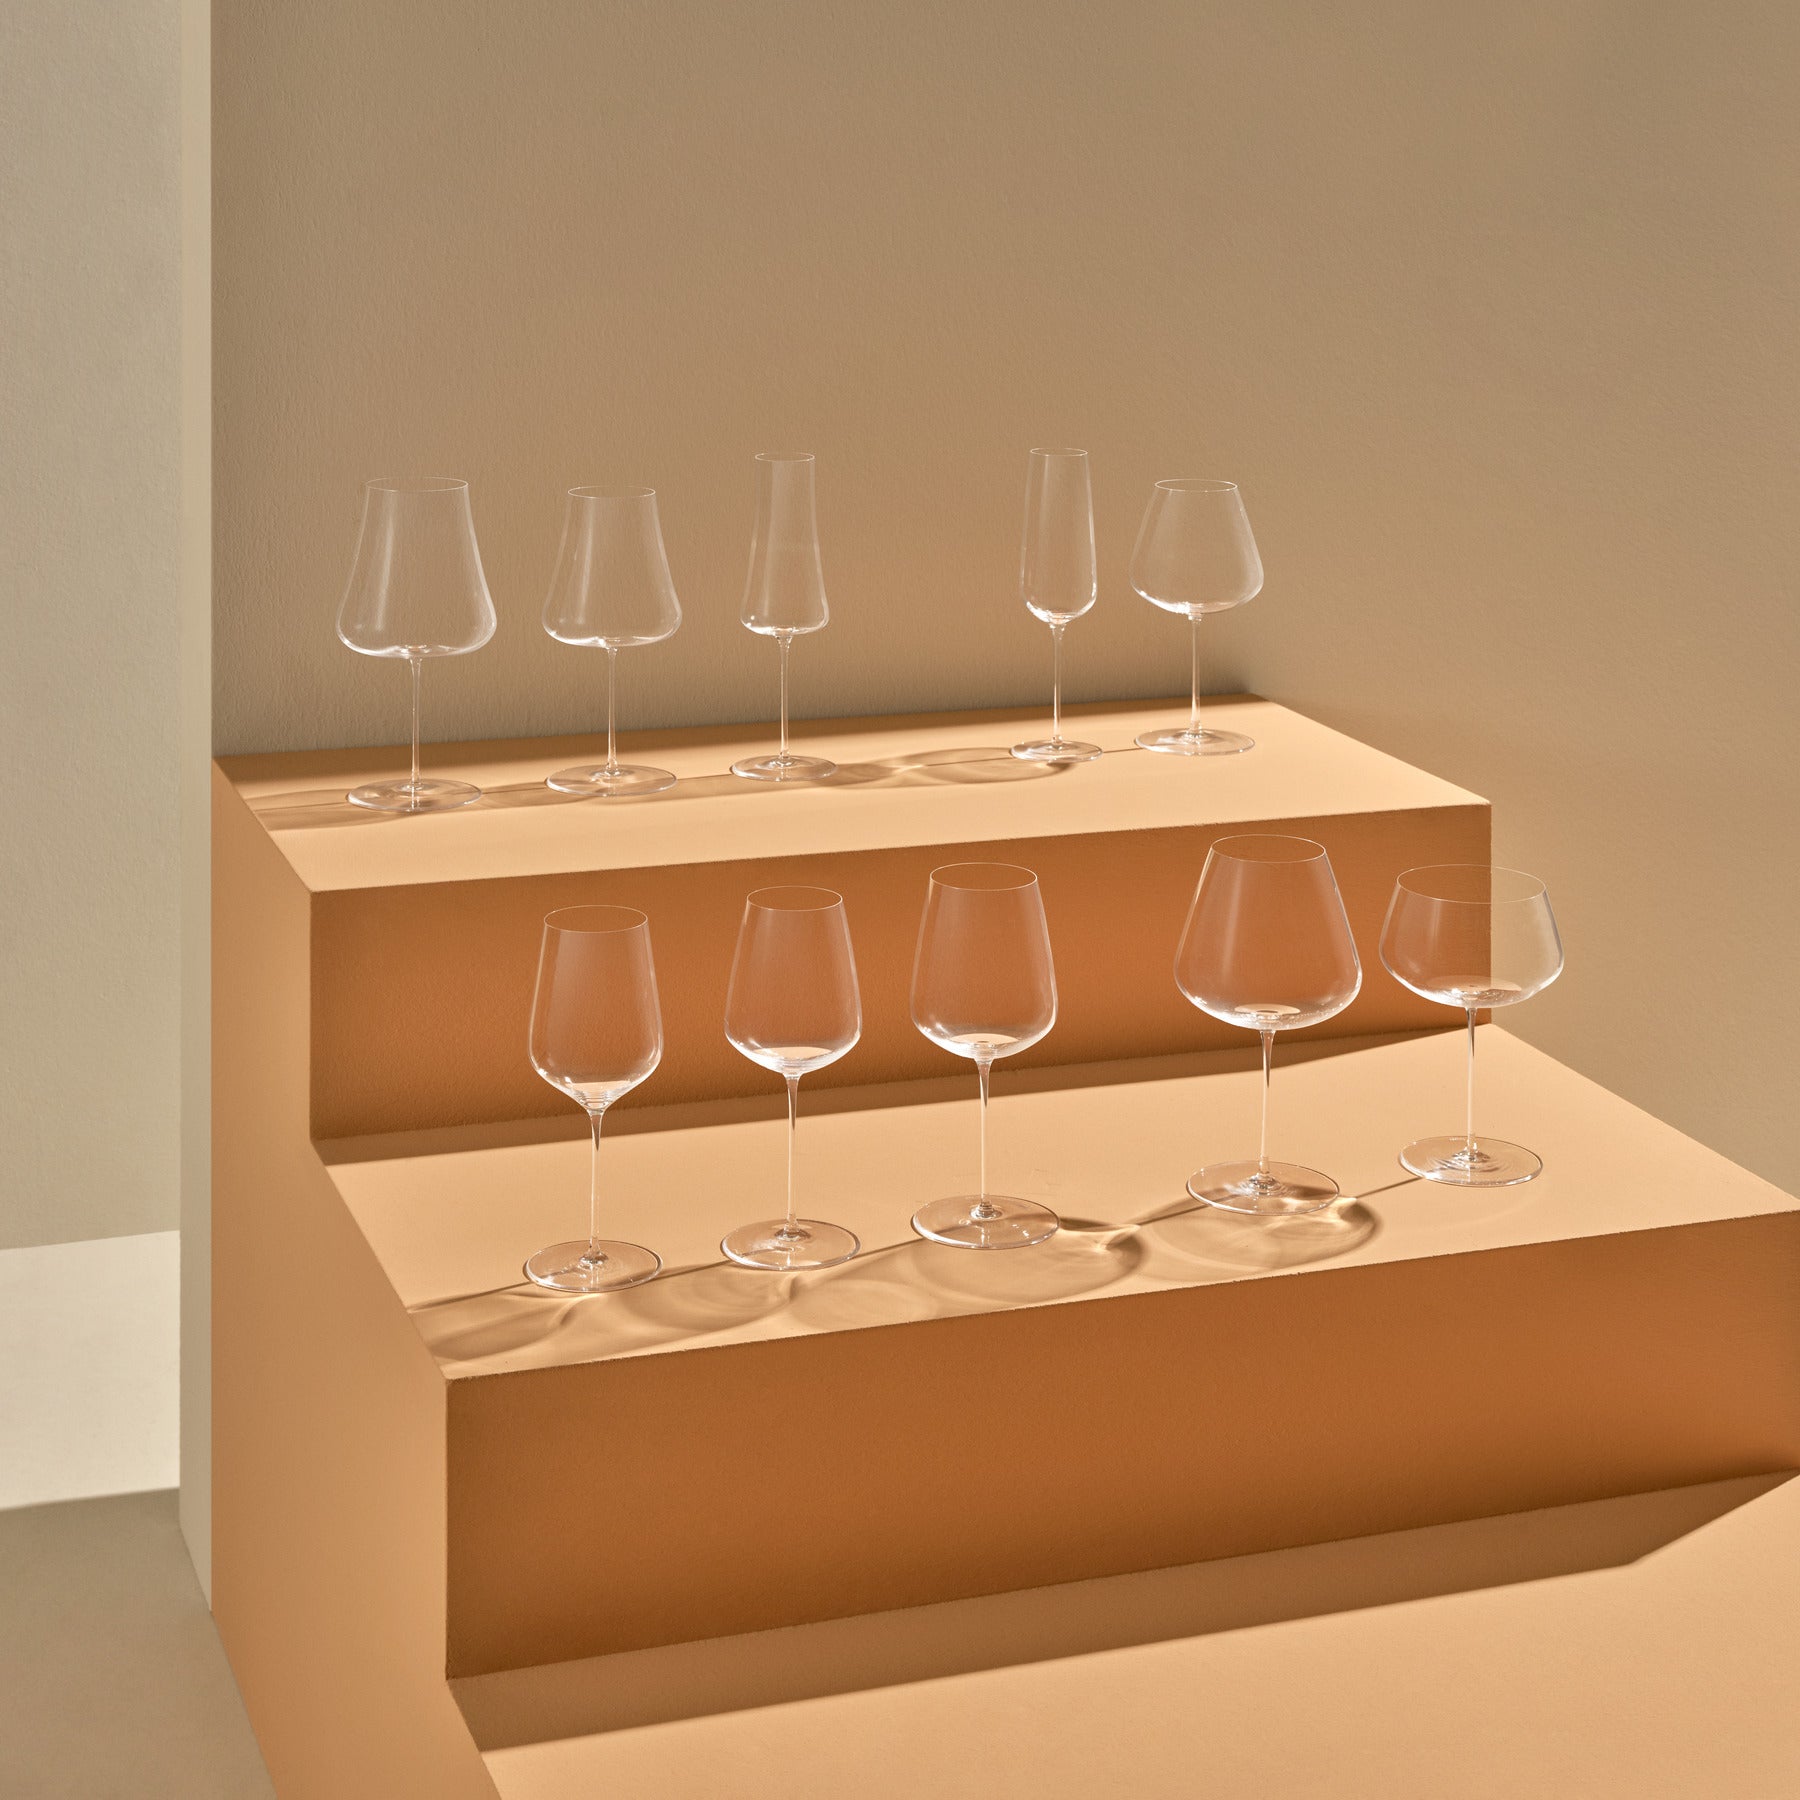 Personalized acrylic wine glasses w/ stem